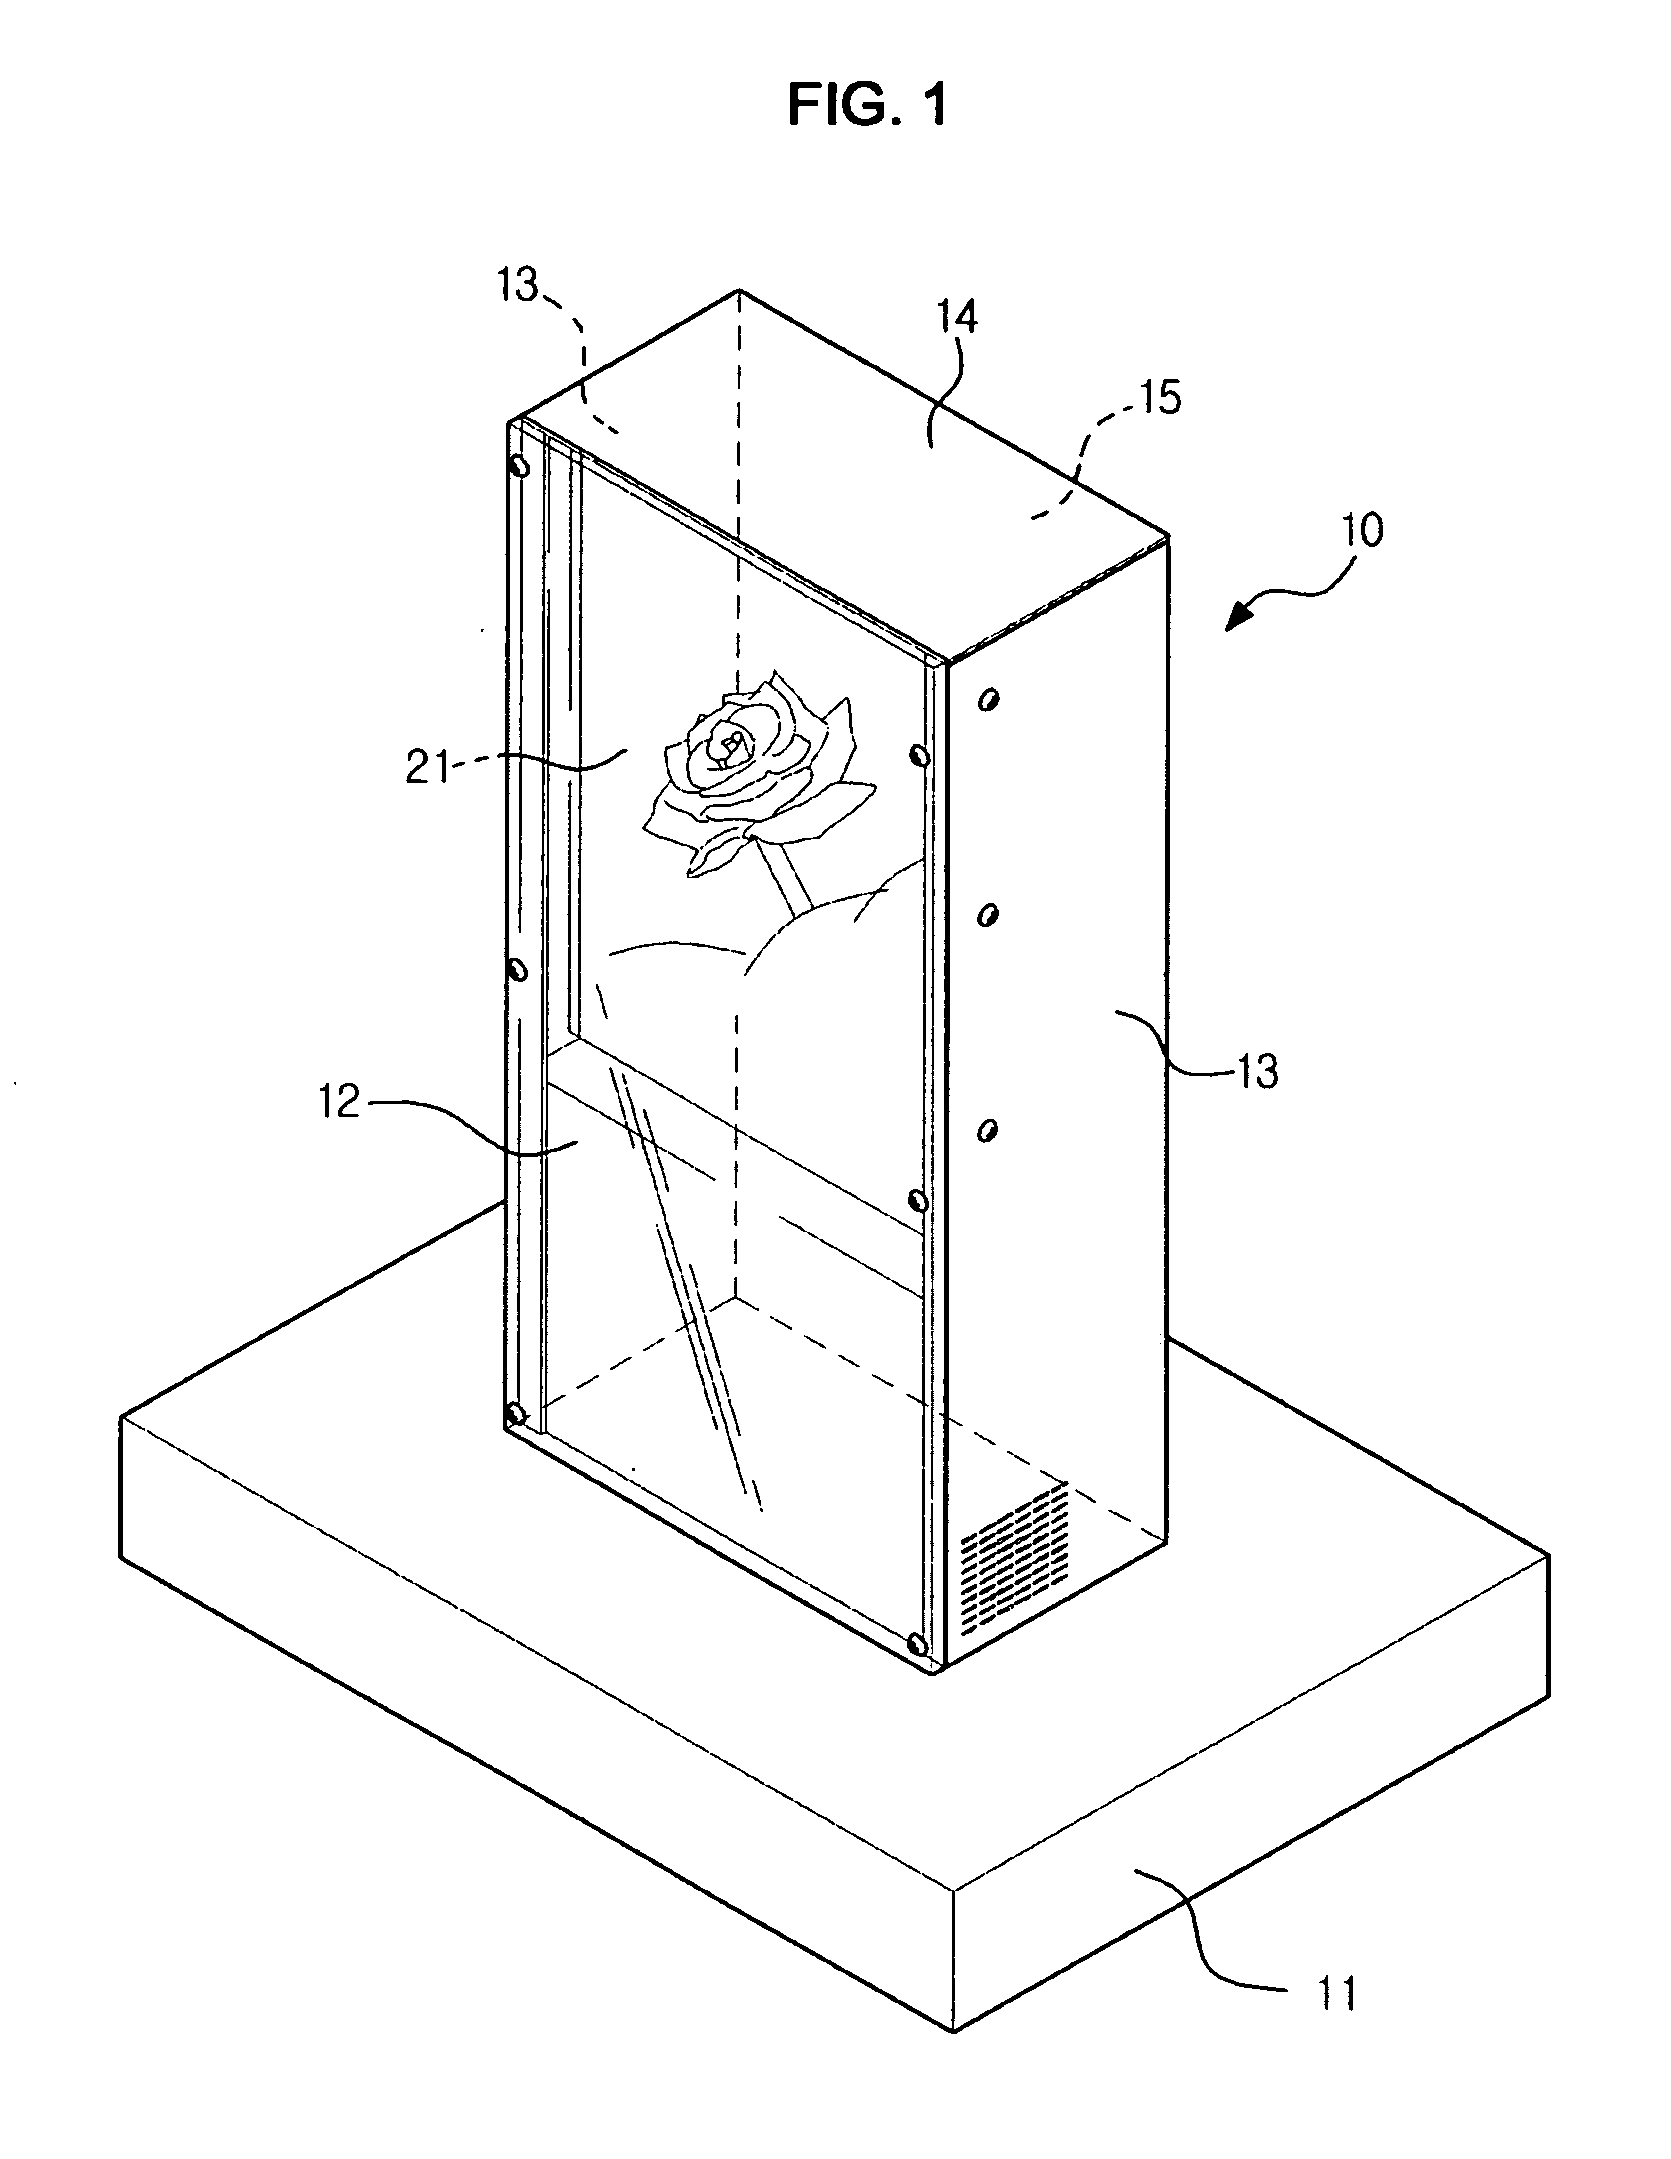 Liquid crystal display device